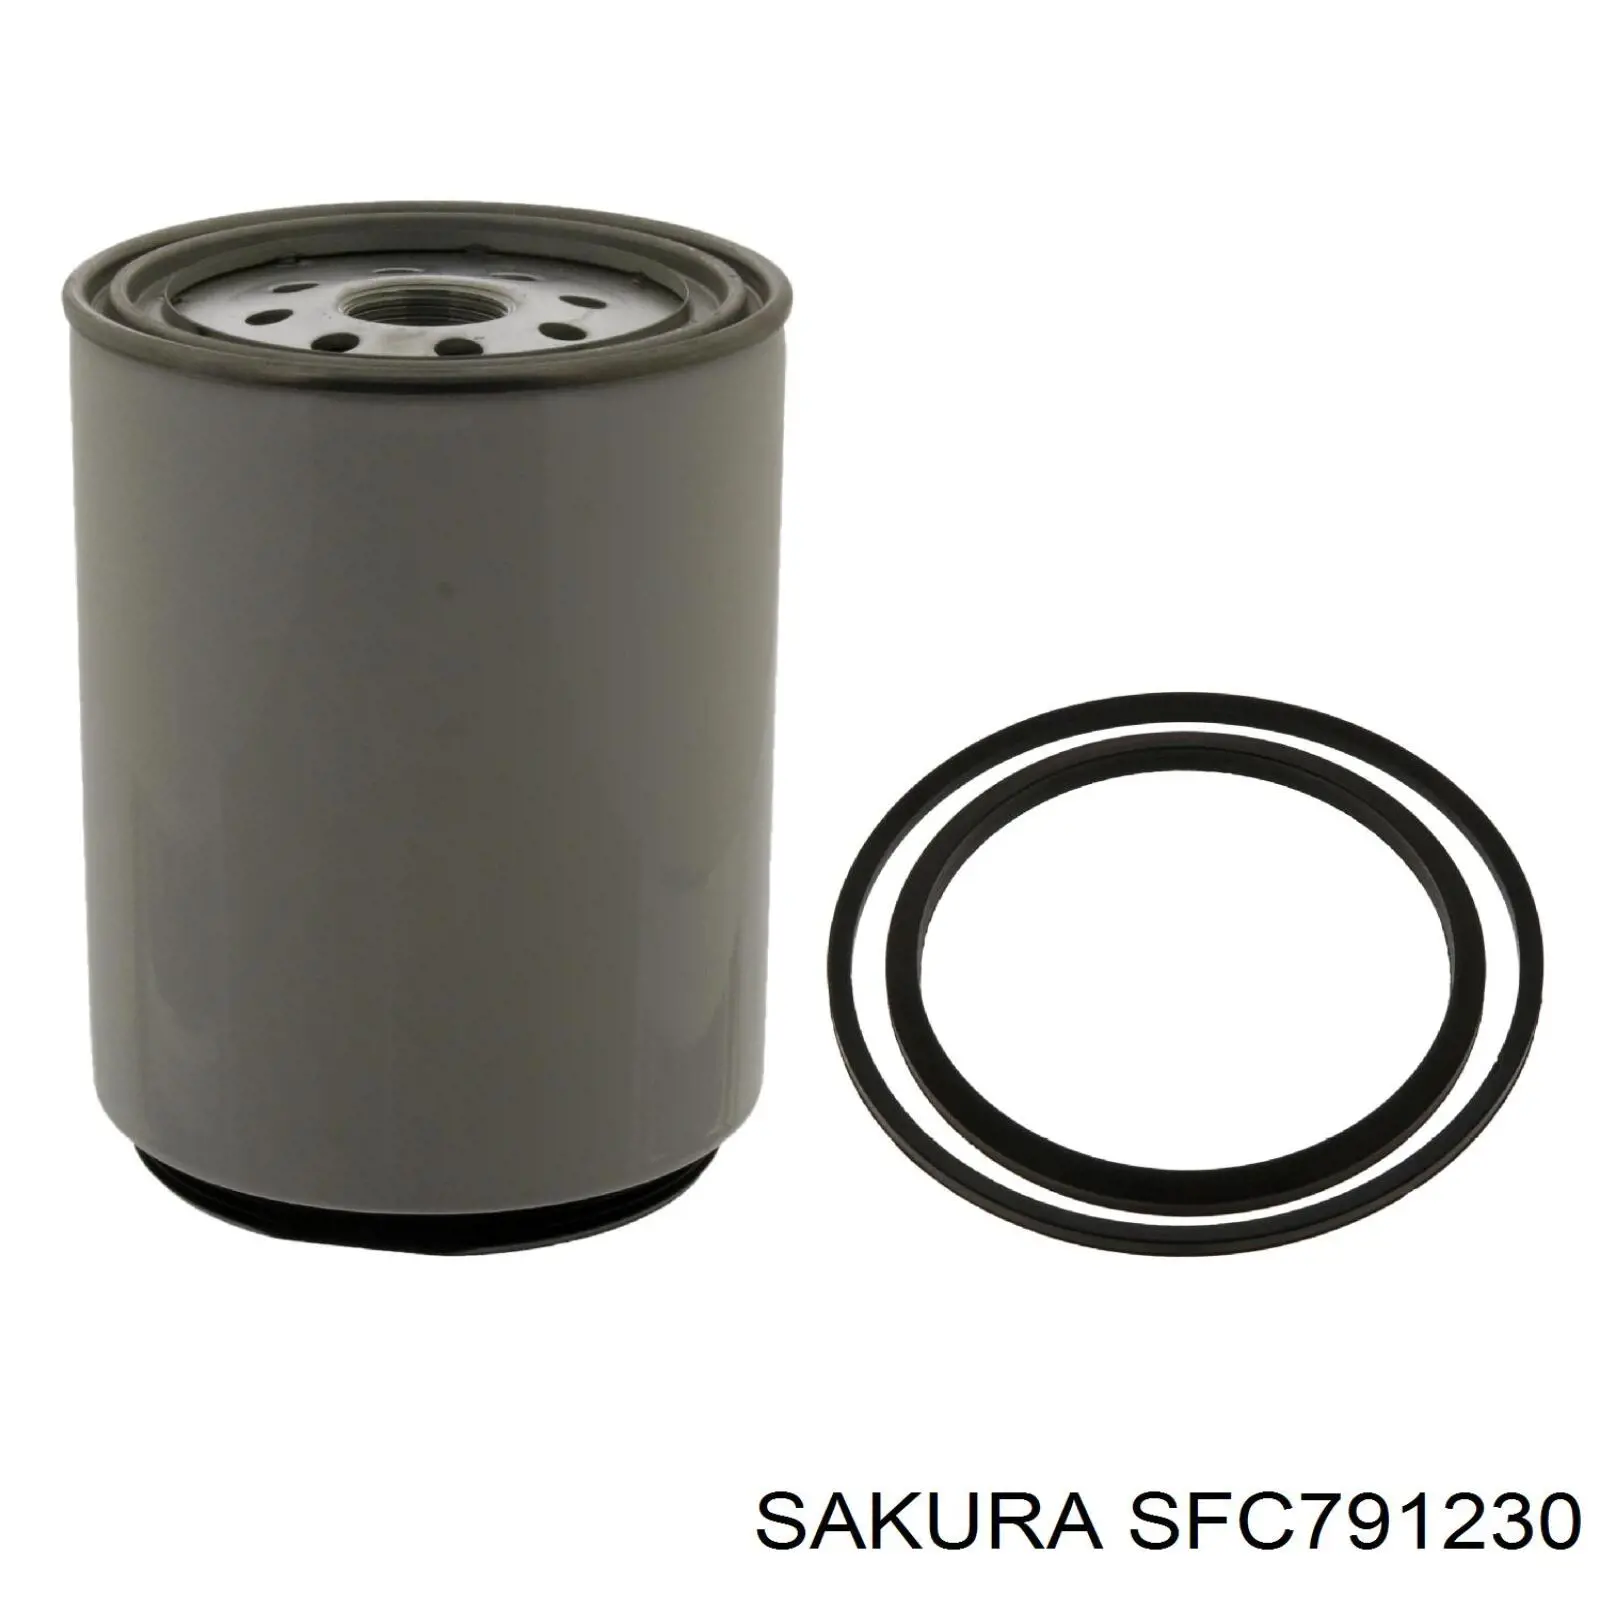 SFC791230 Sakura filtro combustible